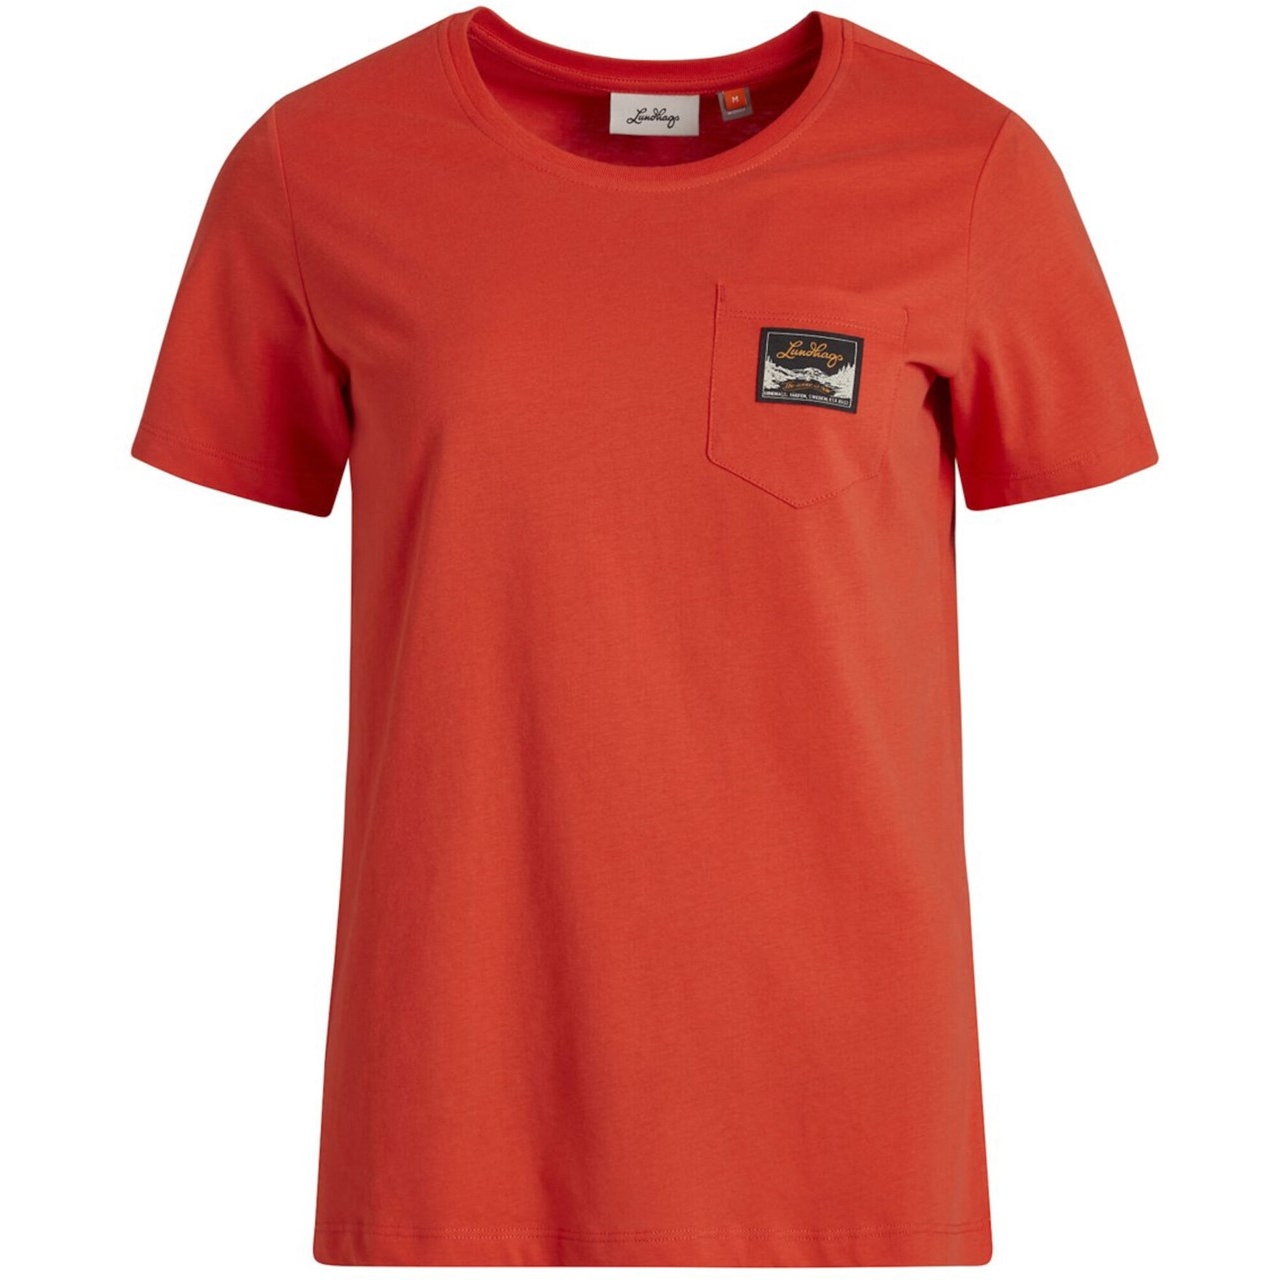 Produktbild von Lundhags Knak T-Shirt Damen - Lively Red 250